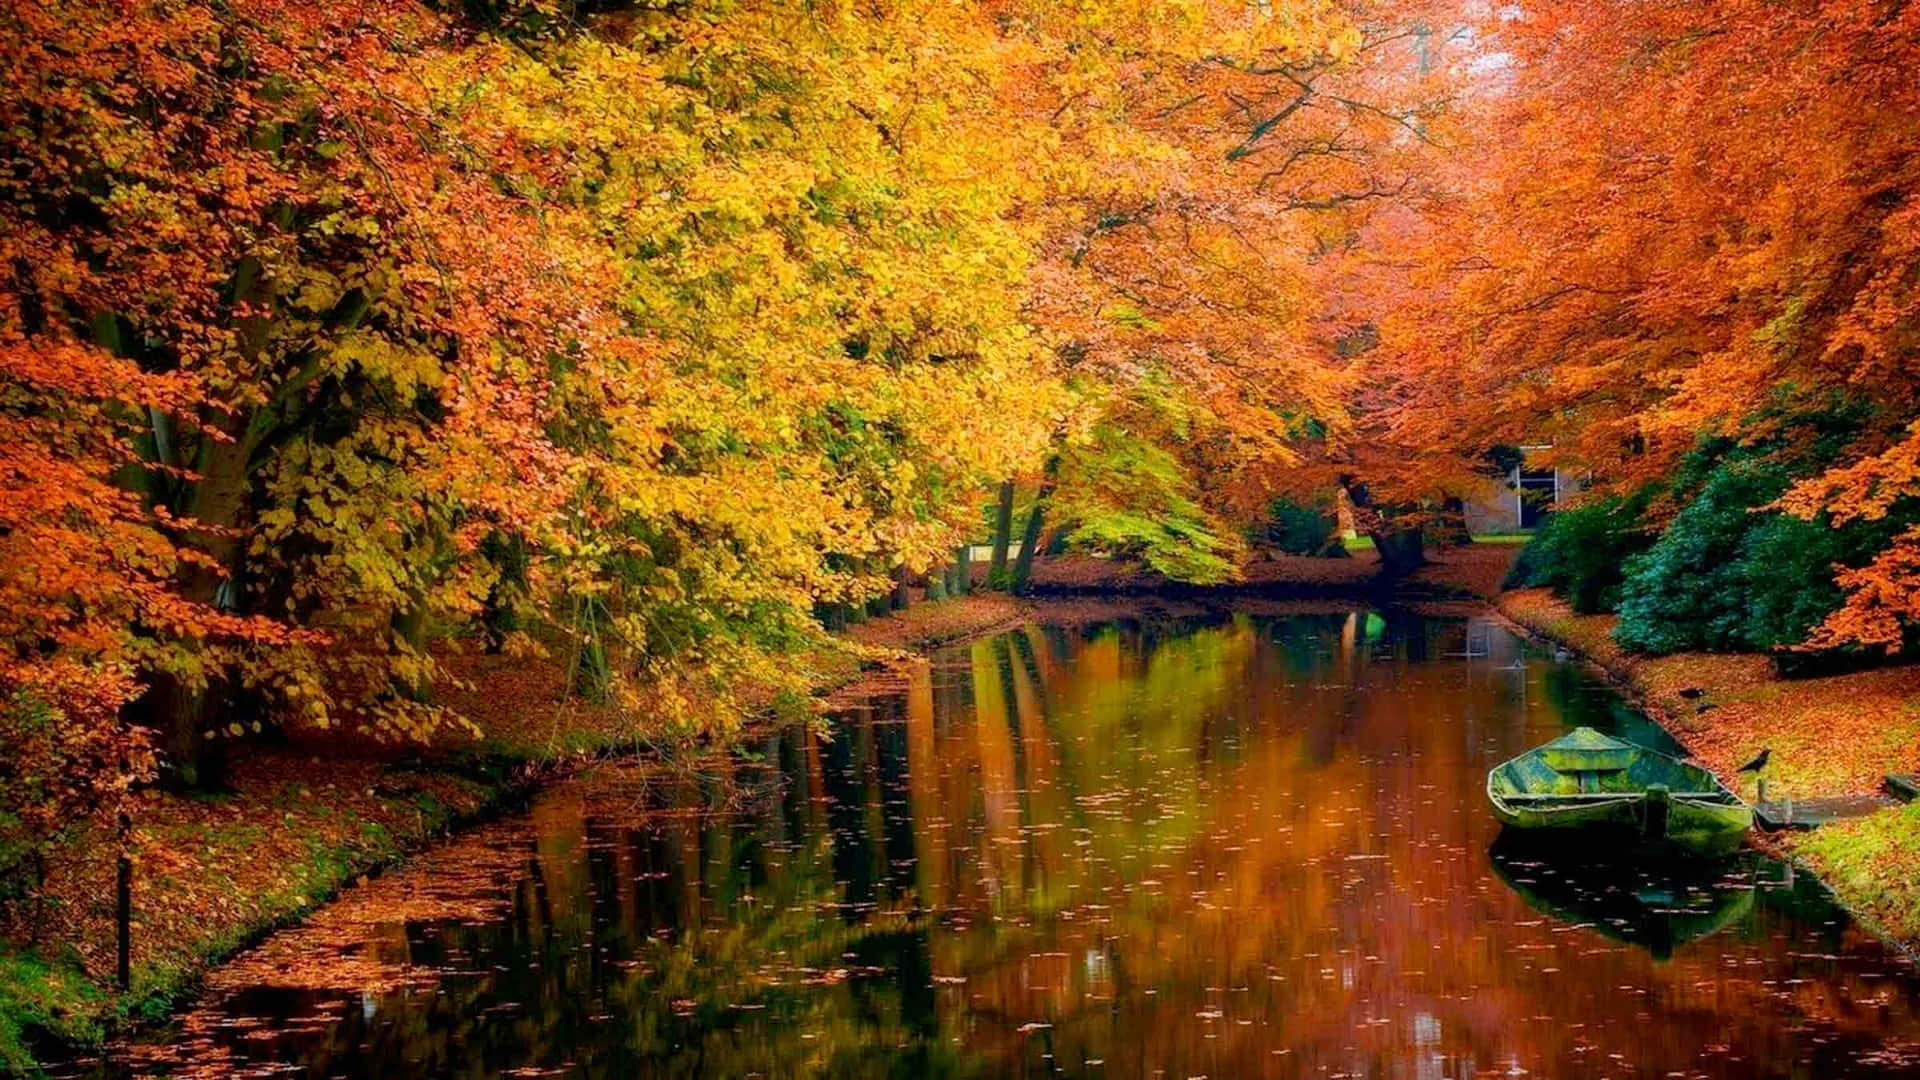 Stunning High-Resolution Autumn Scenery